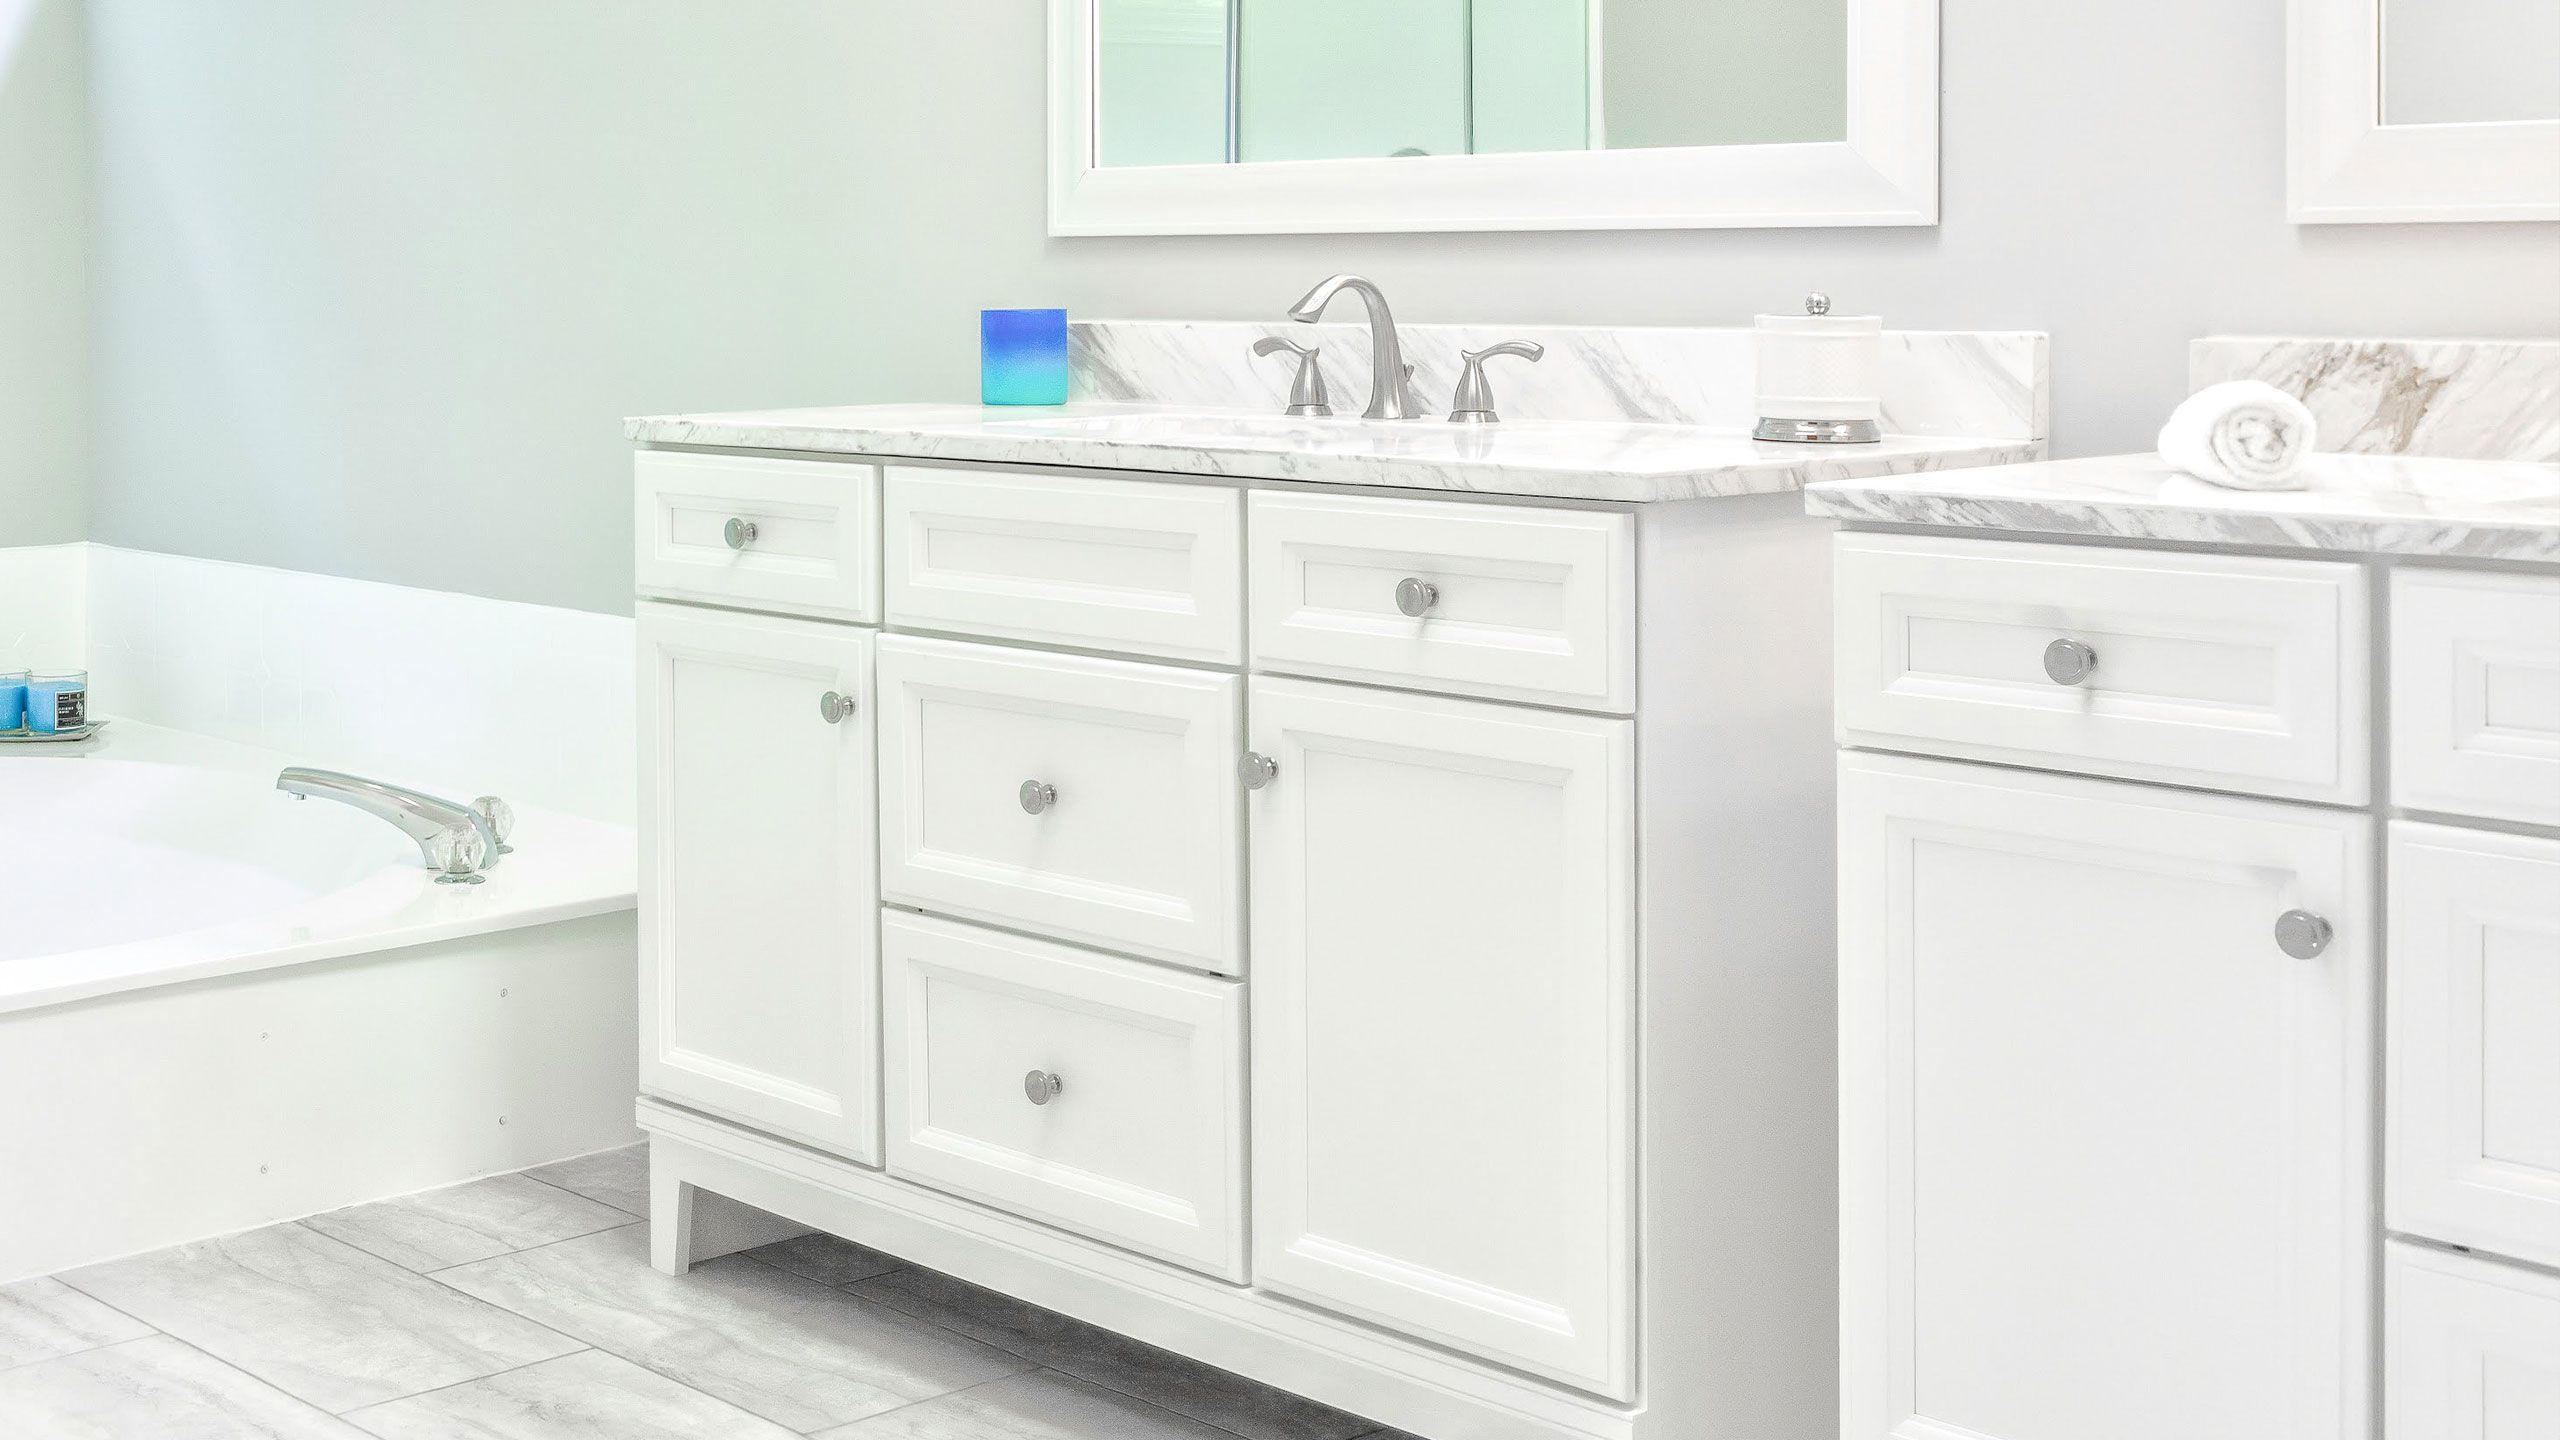  Bathroom & Kitchen Cabinets Resurfacing